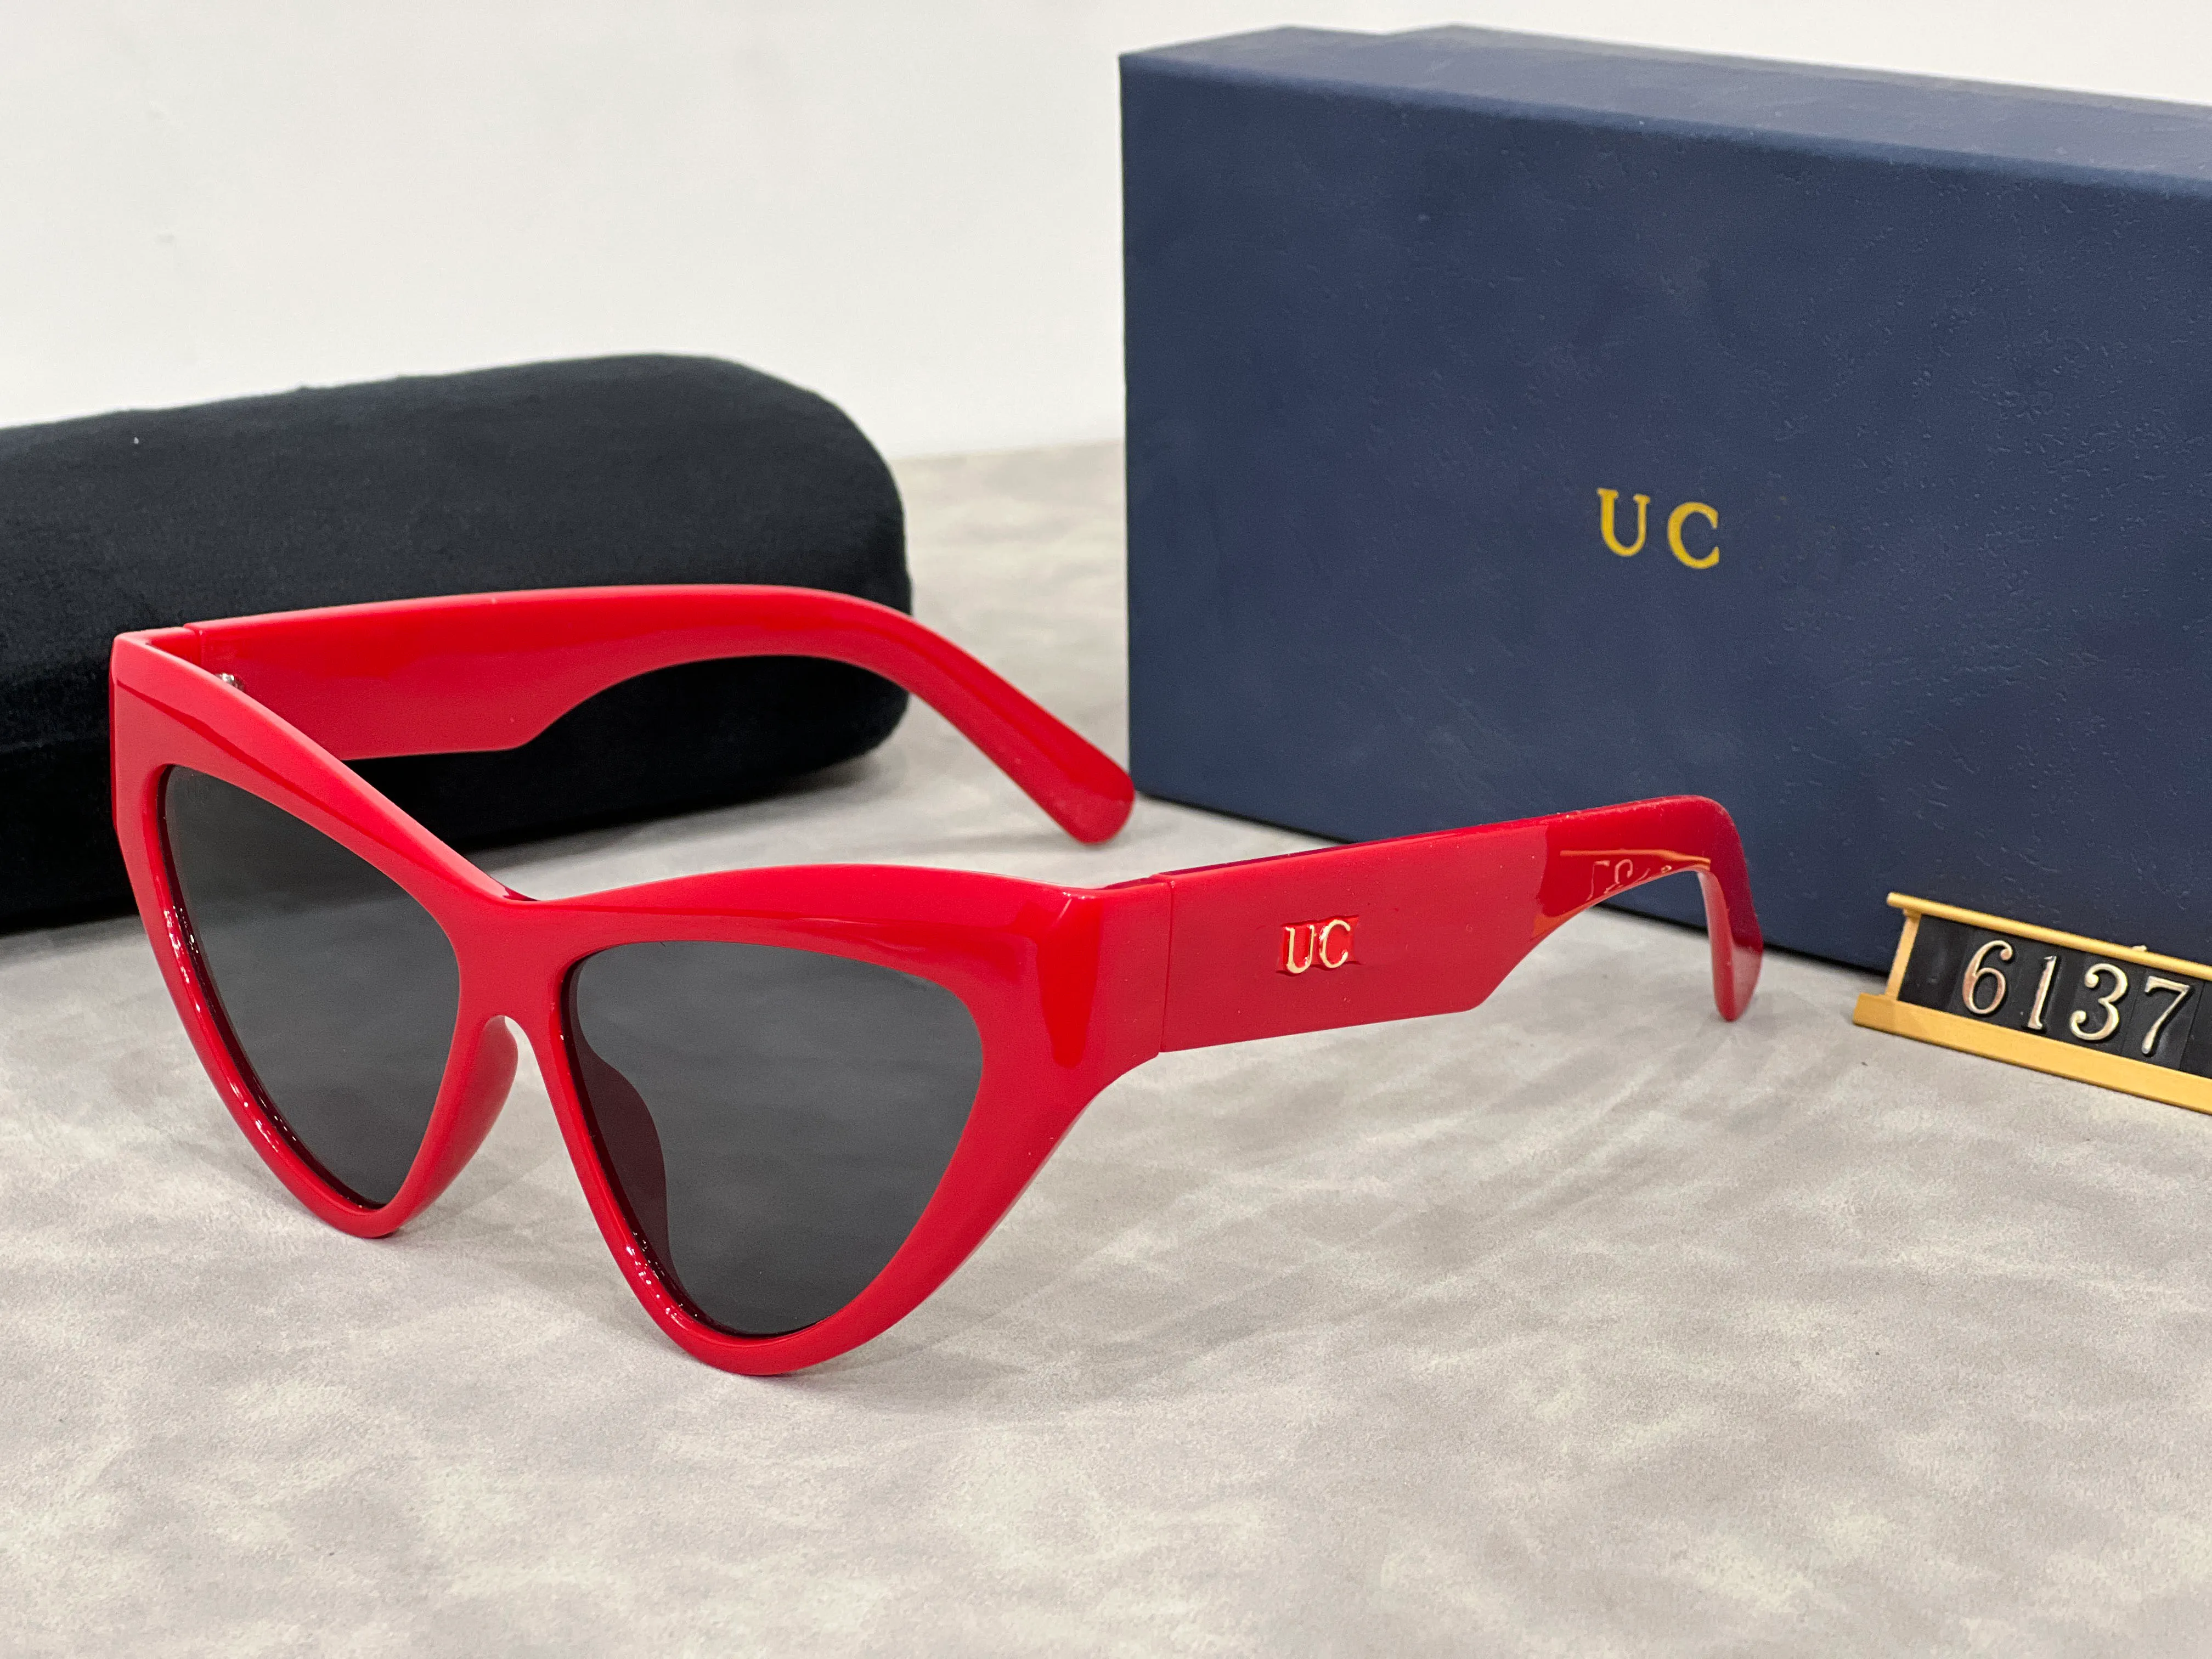 Lunettes de soleil design lunettes de soleil de mode de luxe design protection UV uv400 plage voyage filles cadeau d'anniversaire cadeau de Noël très bon